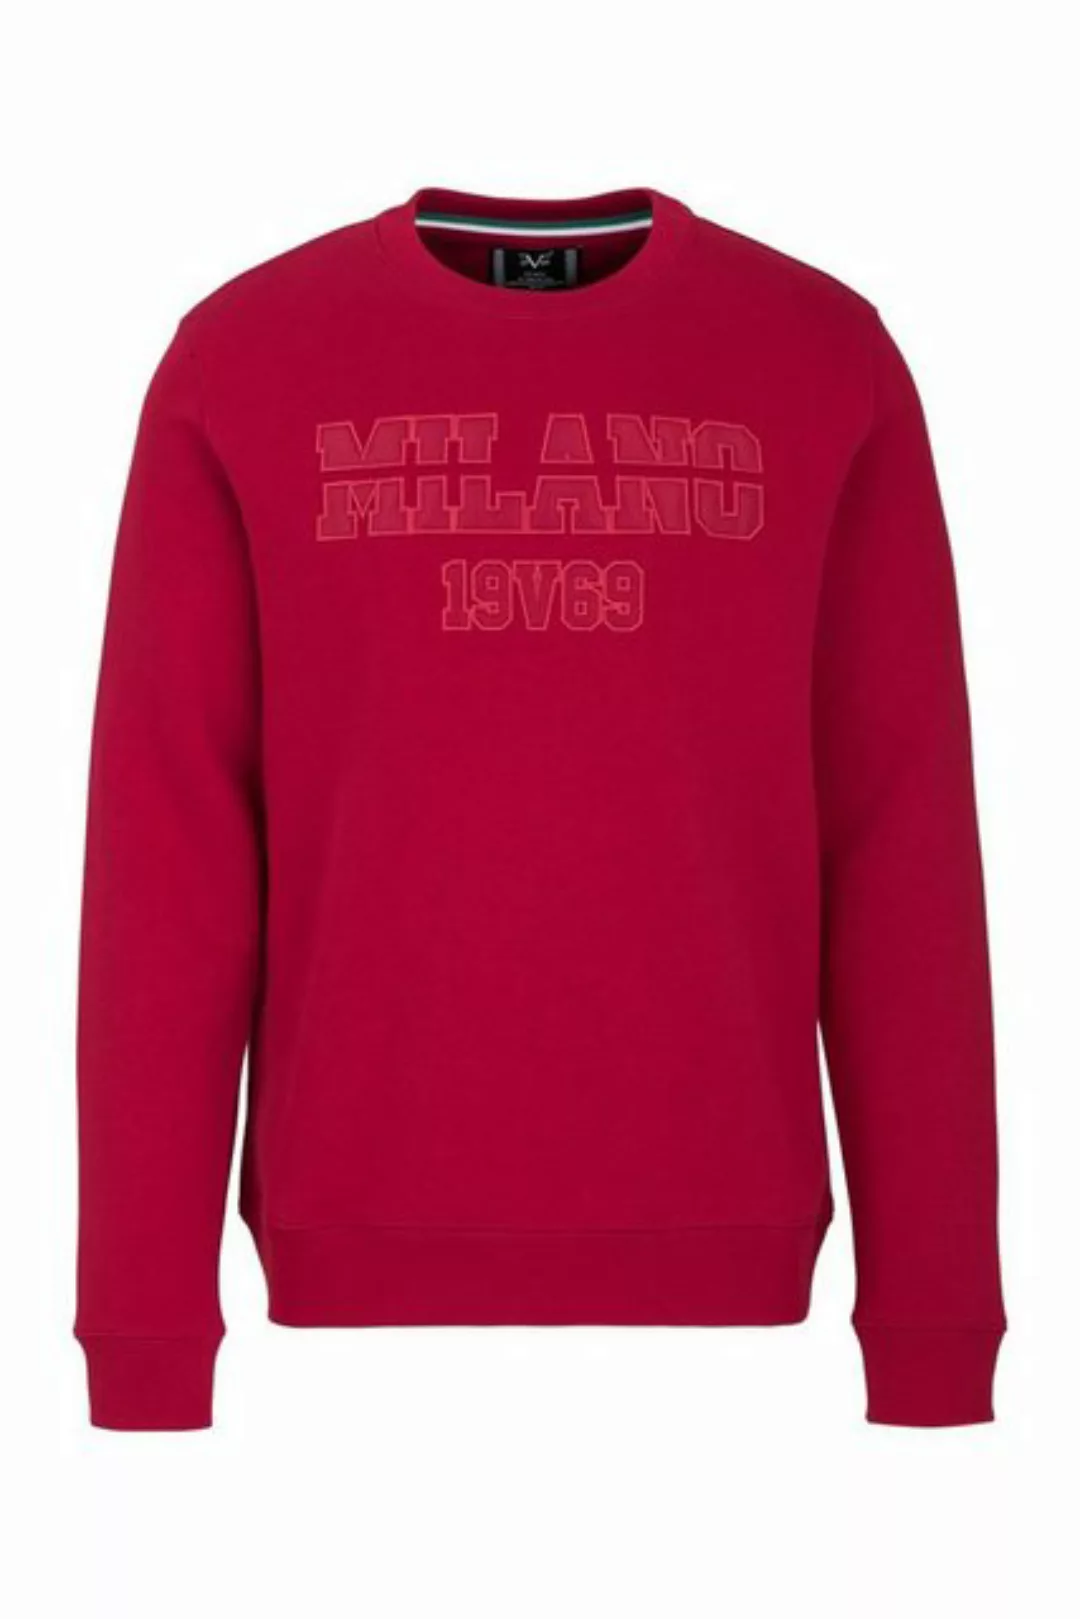 19V69 Italia by Versace Sweatshirt by Versace Sportivo SRL - Gianni günstig online kaufen